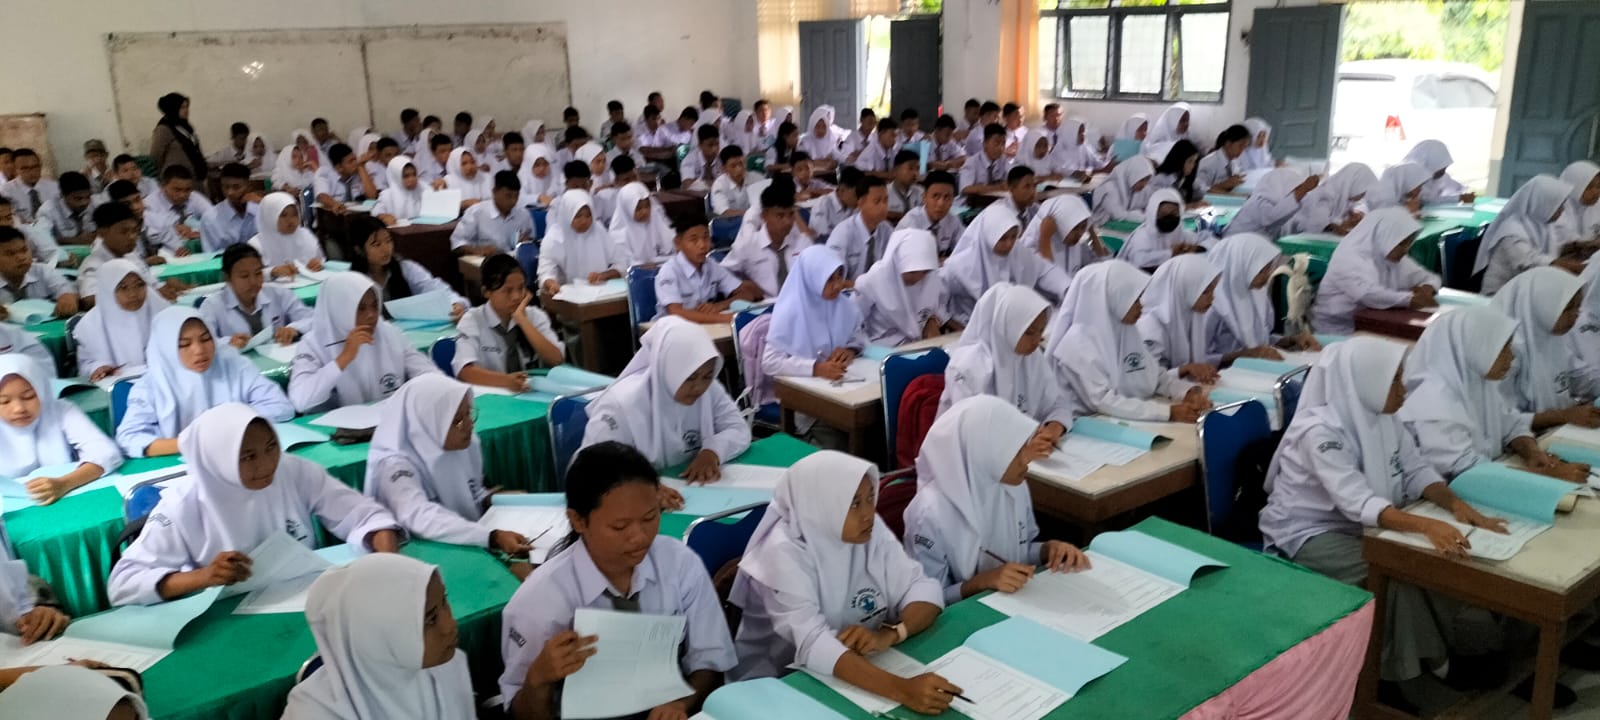 Jasa Psikotes Sekolah Terbaik di Indonesia Bisa Online